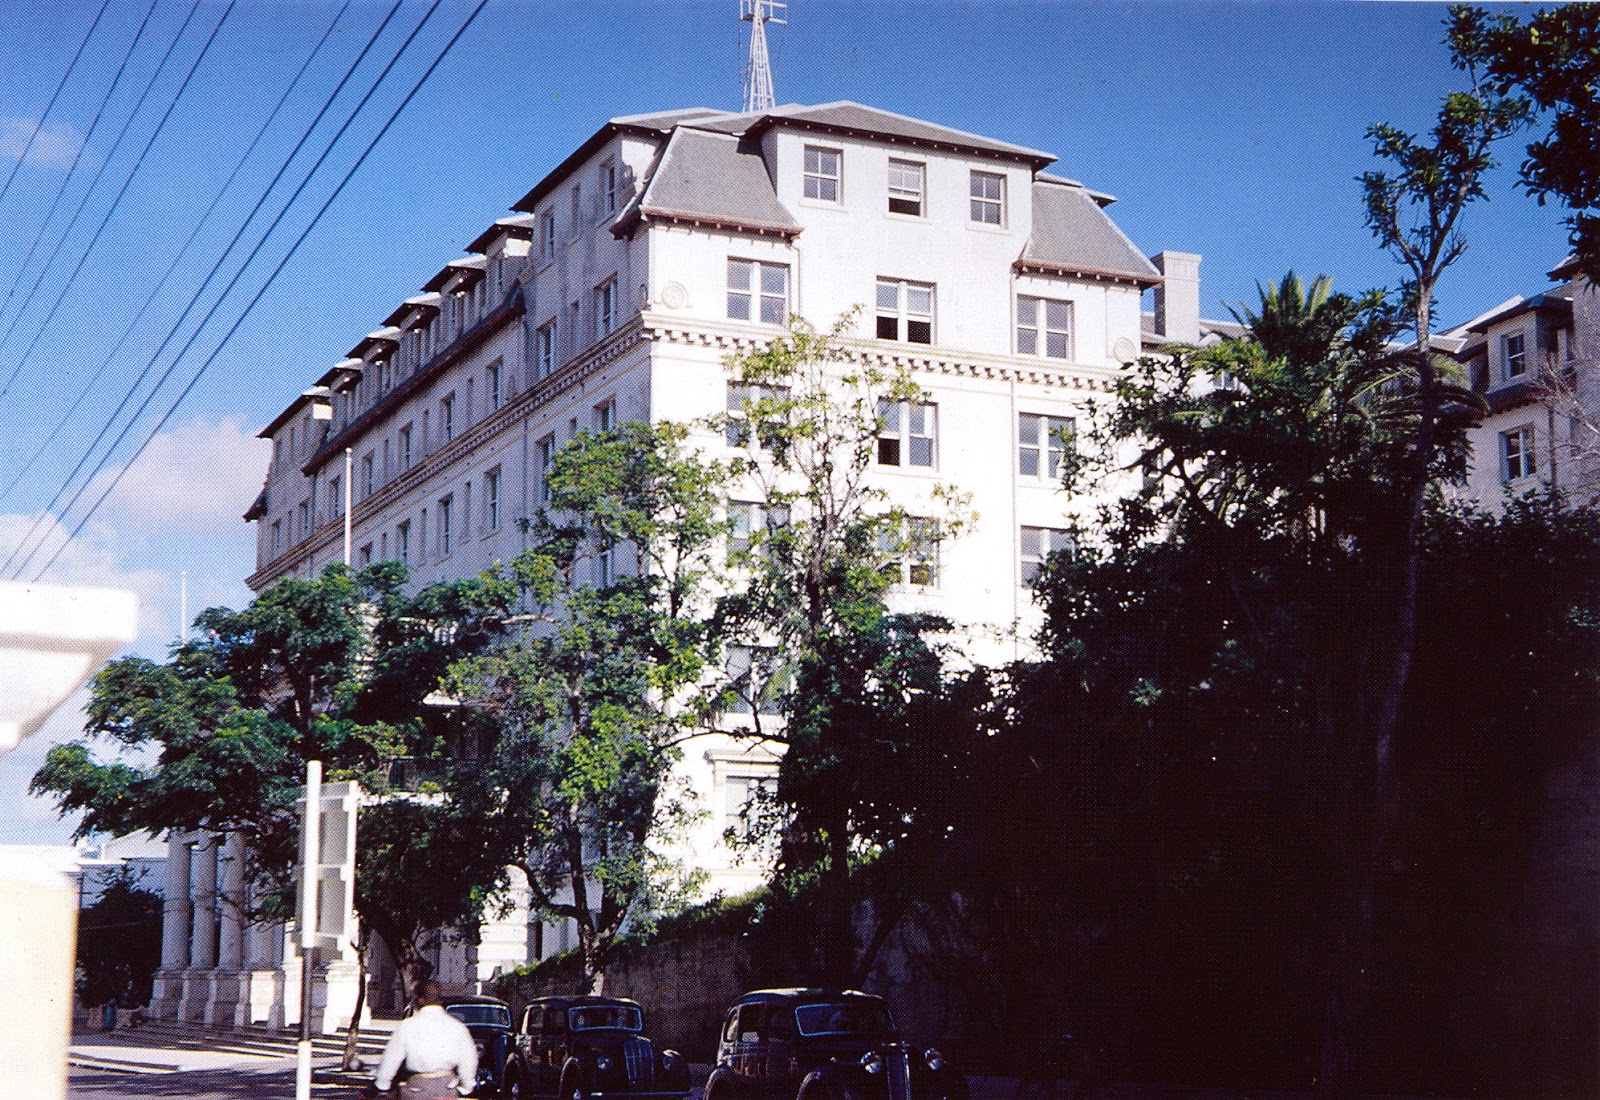 Hamilton Hotel